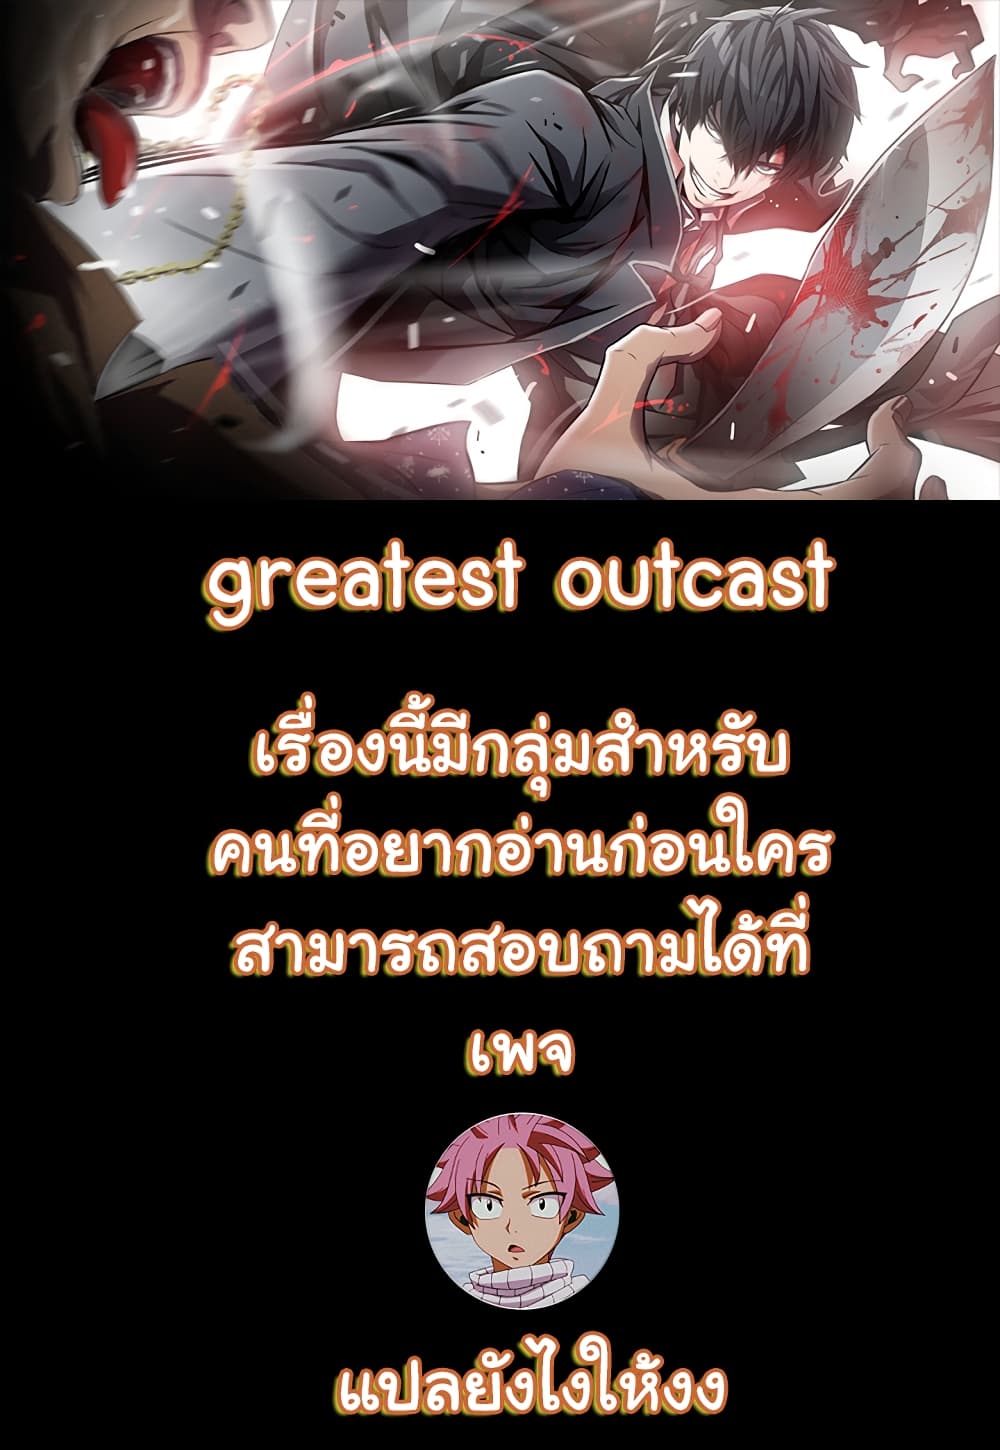 Greatest Outcast 7 (1)